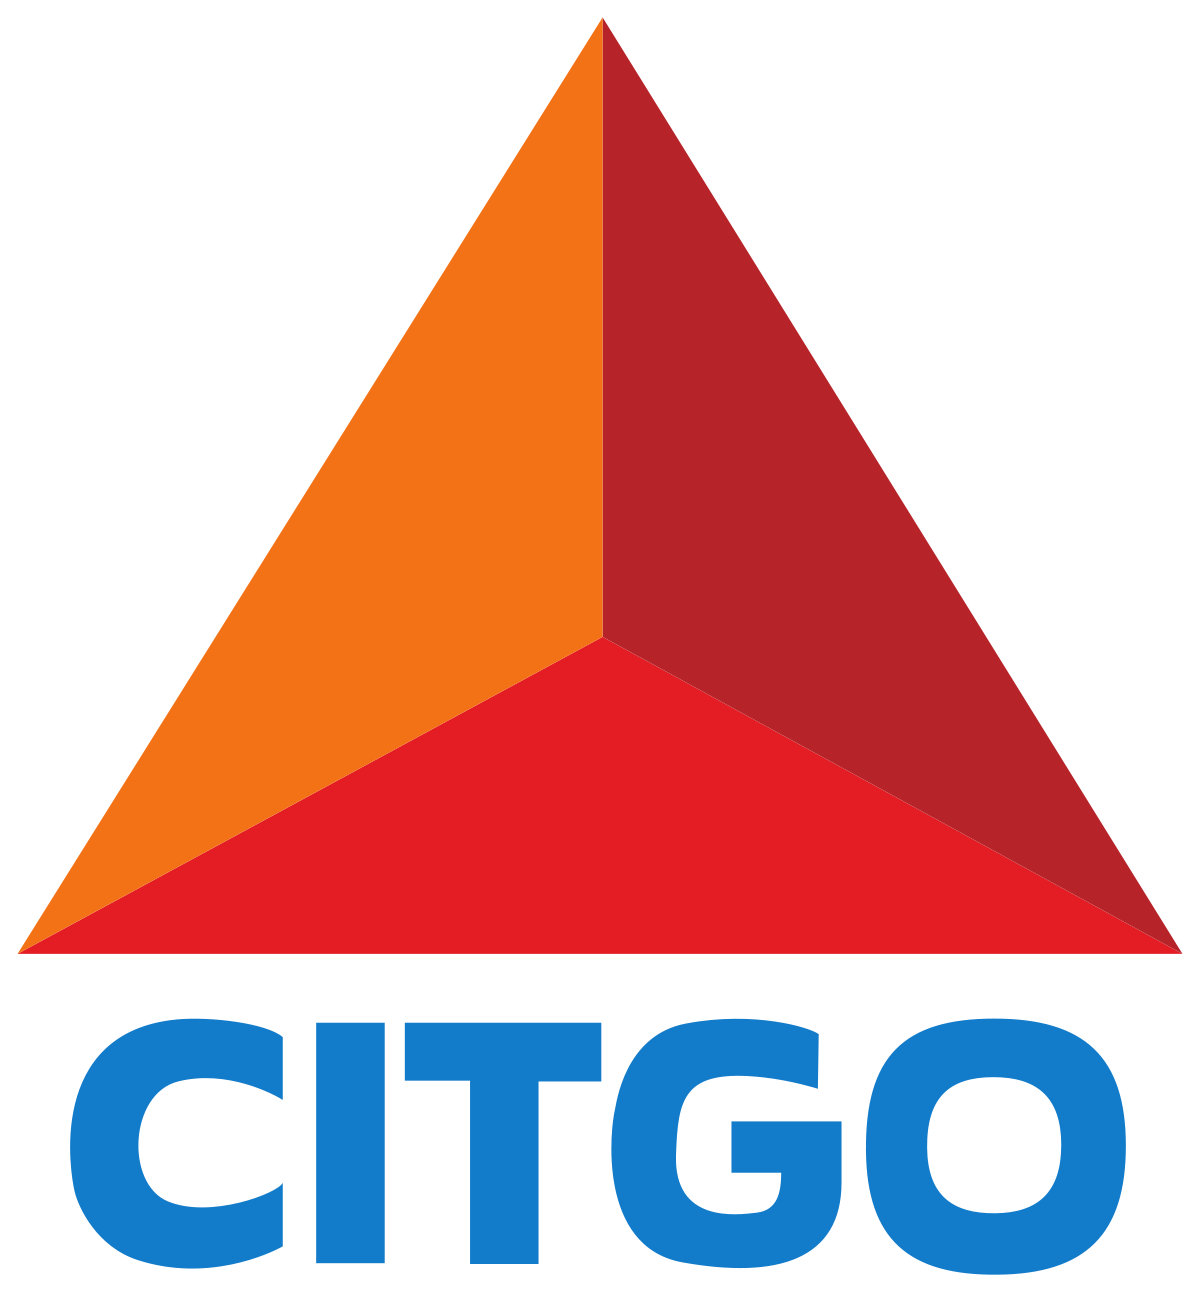 Рис. 4. Логотип Citgo